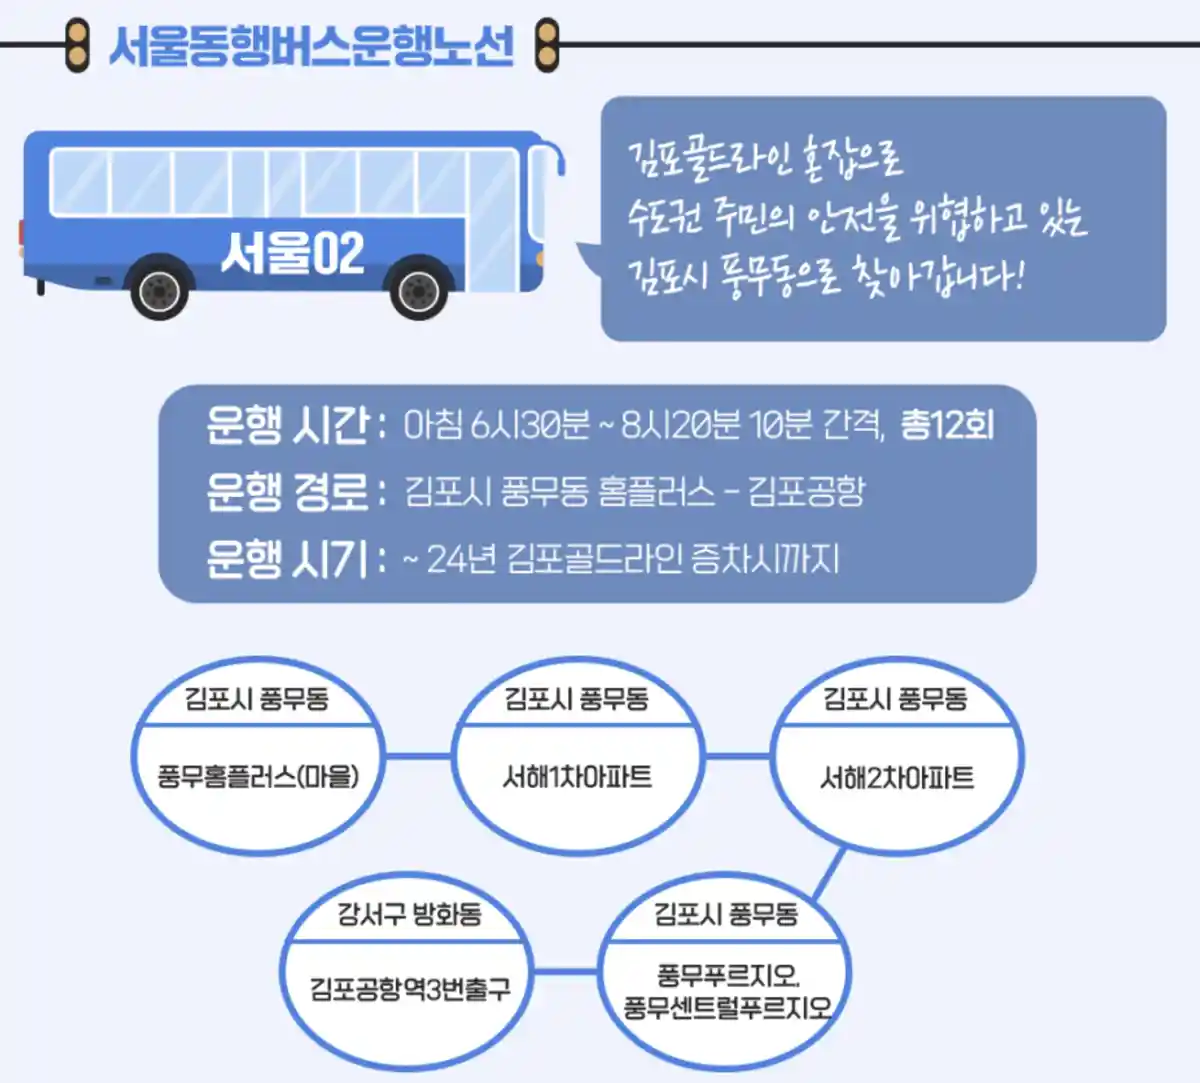 서울동행버스-02번-김포시풍무홈플러스출발-김포공항역3번출구도착-노선